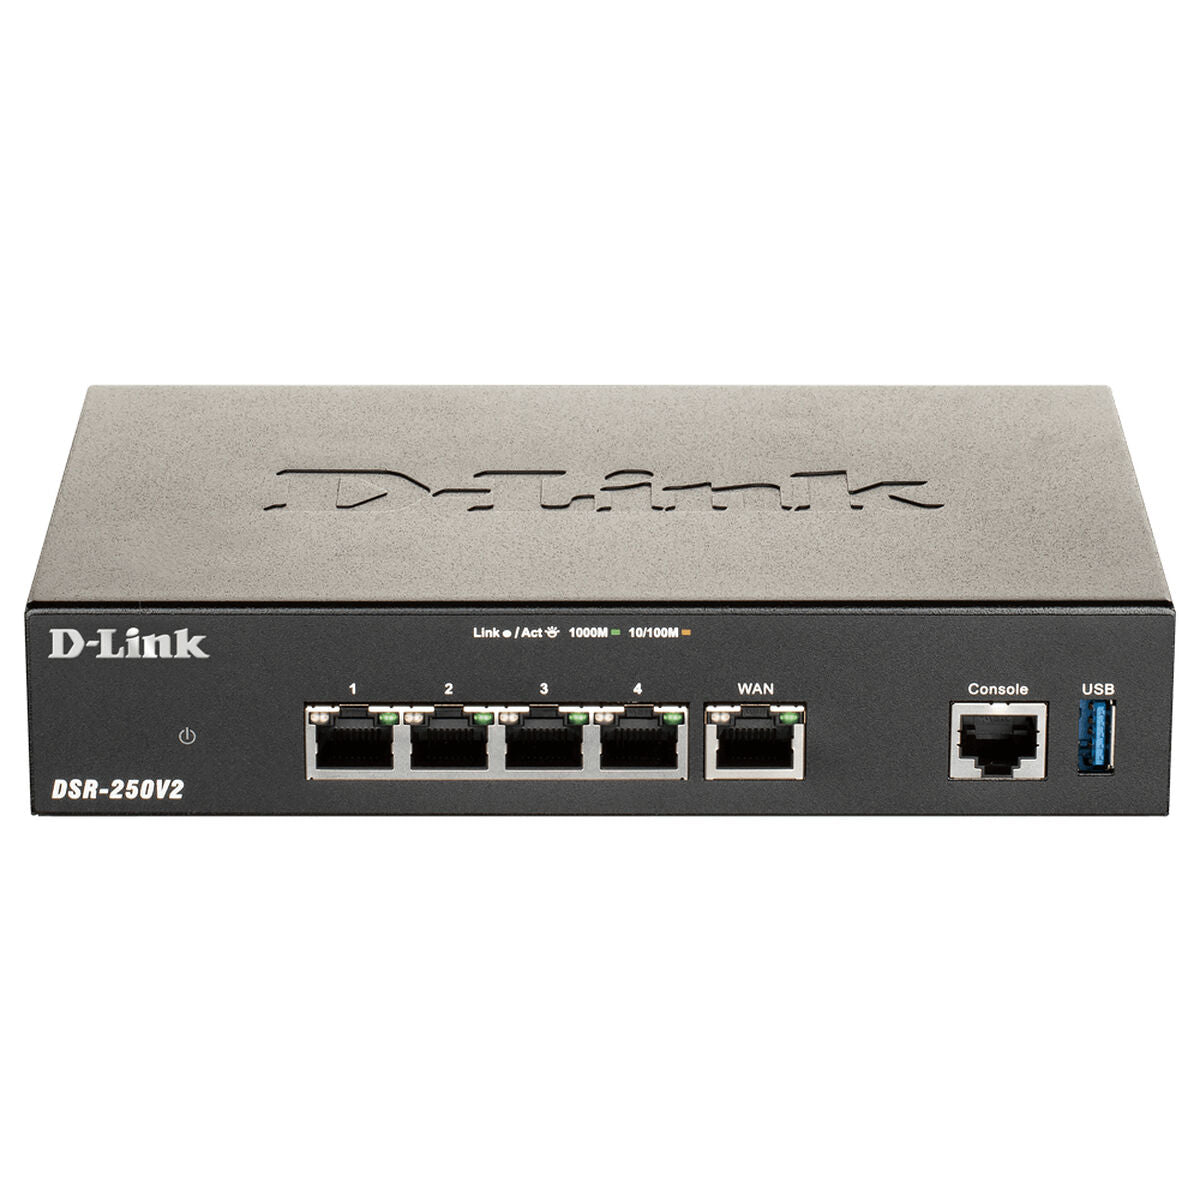 D-Link DSR-250V2-Router